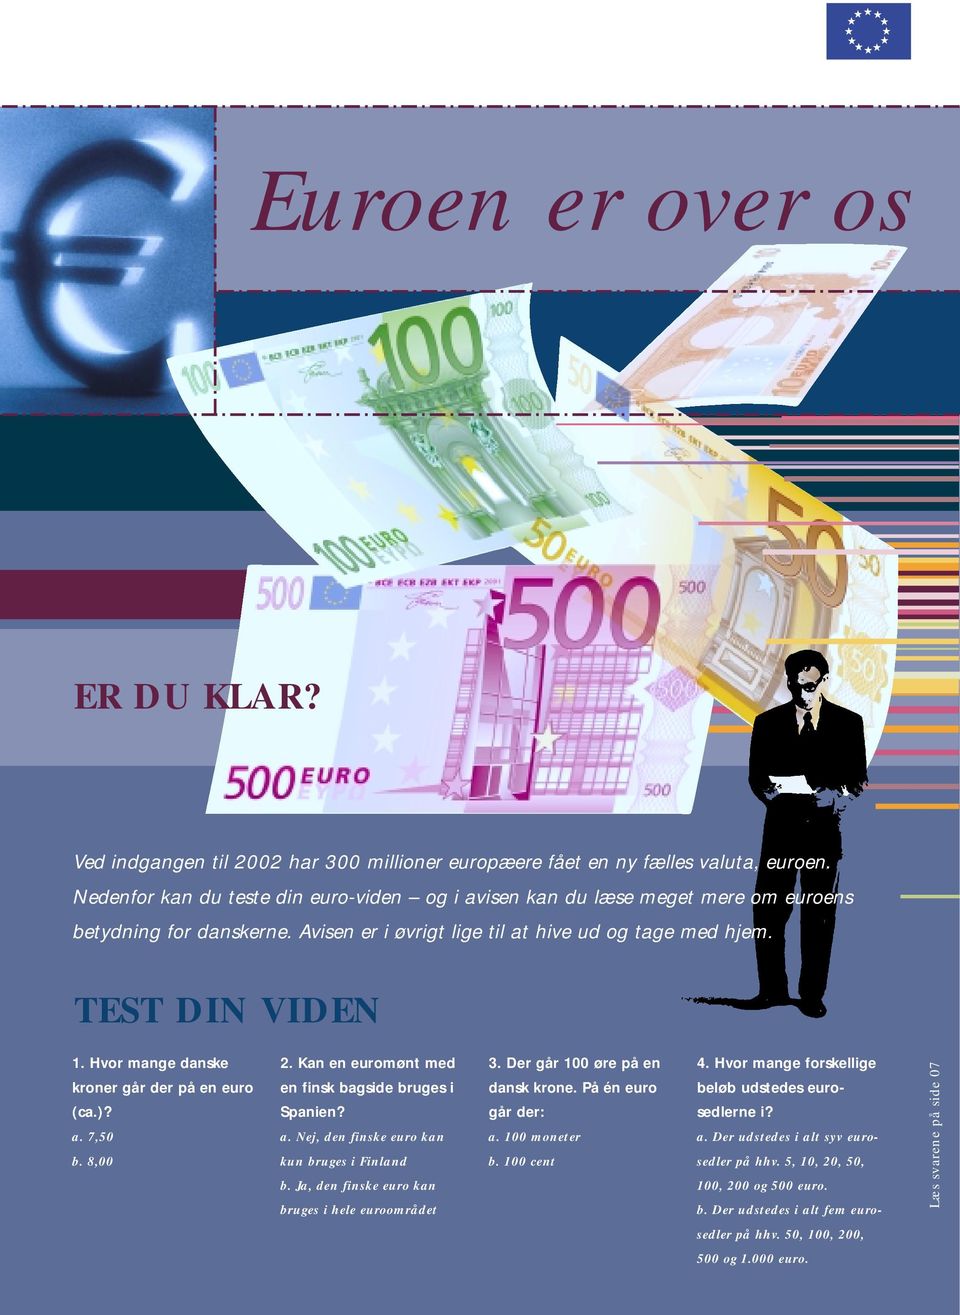 Hvor mange danske kroner går der på en euro (ca.)? a. 7,50 b. 8,00 2. Kan en euromønt med en finsk bagside bruges i Spanien? a. Nej, den finske euro kan kun bruges i Finland b.